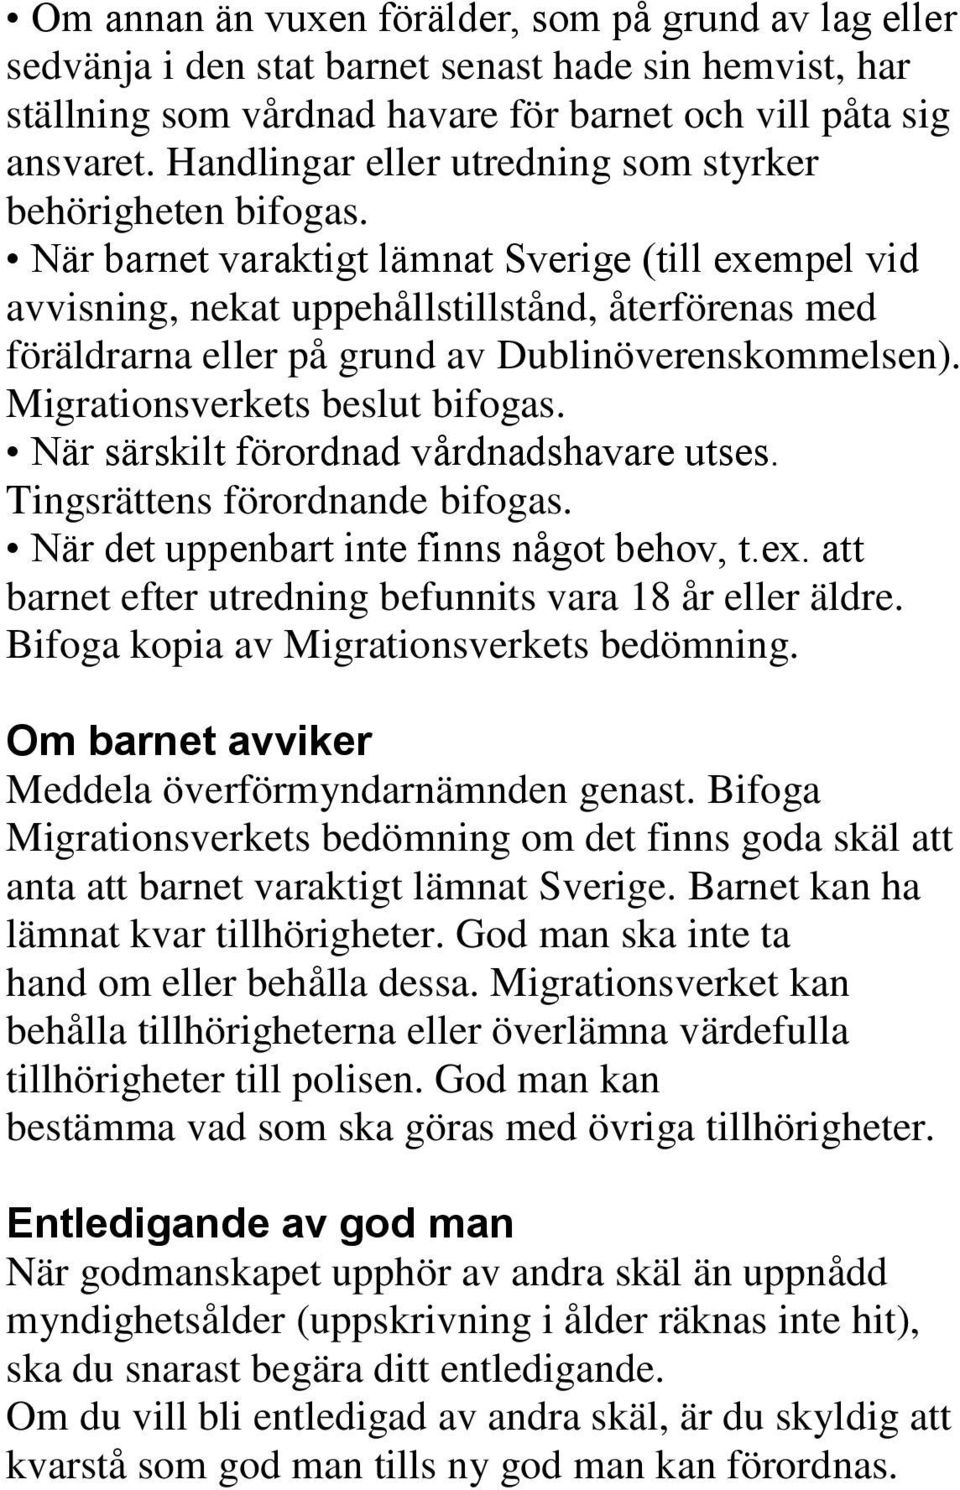 När barnet varaktigt lämnat Sverige (till exempel vid avvisning, nekat uppehållstillstånd, återförenas med föräldrarna eller på grund av Dublinöverenskommelsen). Migrationsverkets beslut bifogas.